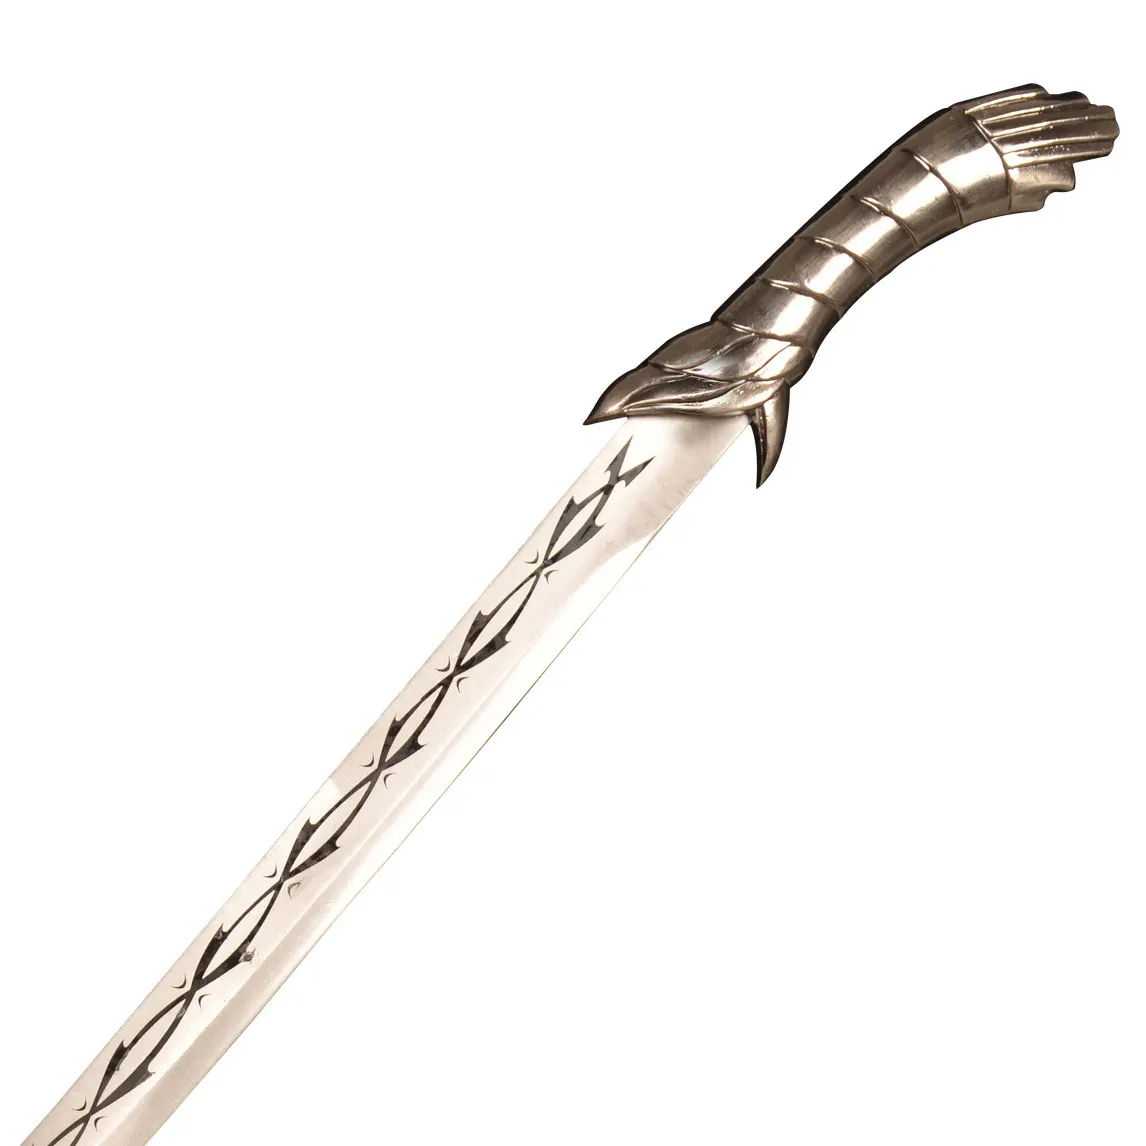 Venta caliente 56cm 0,8 kg Creed Assassin's Altair espada de hoja corta para colección de Cosplay